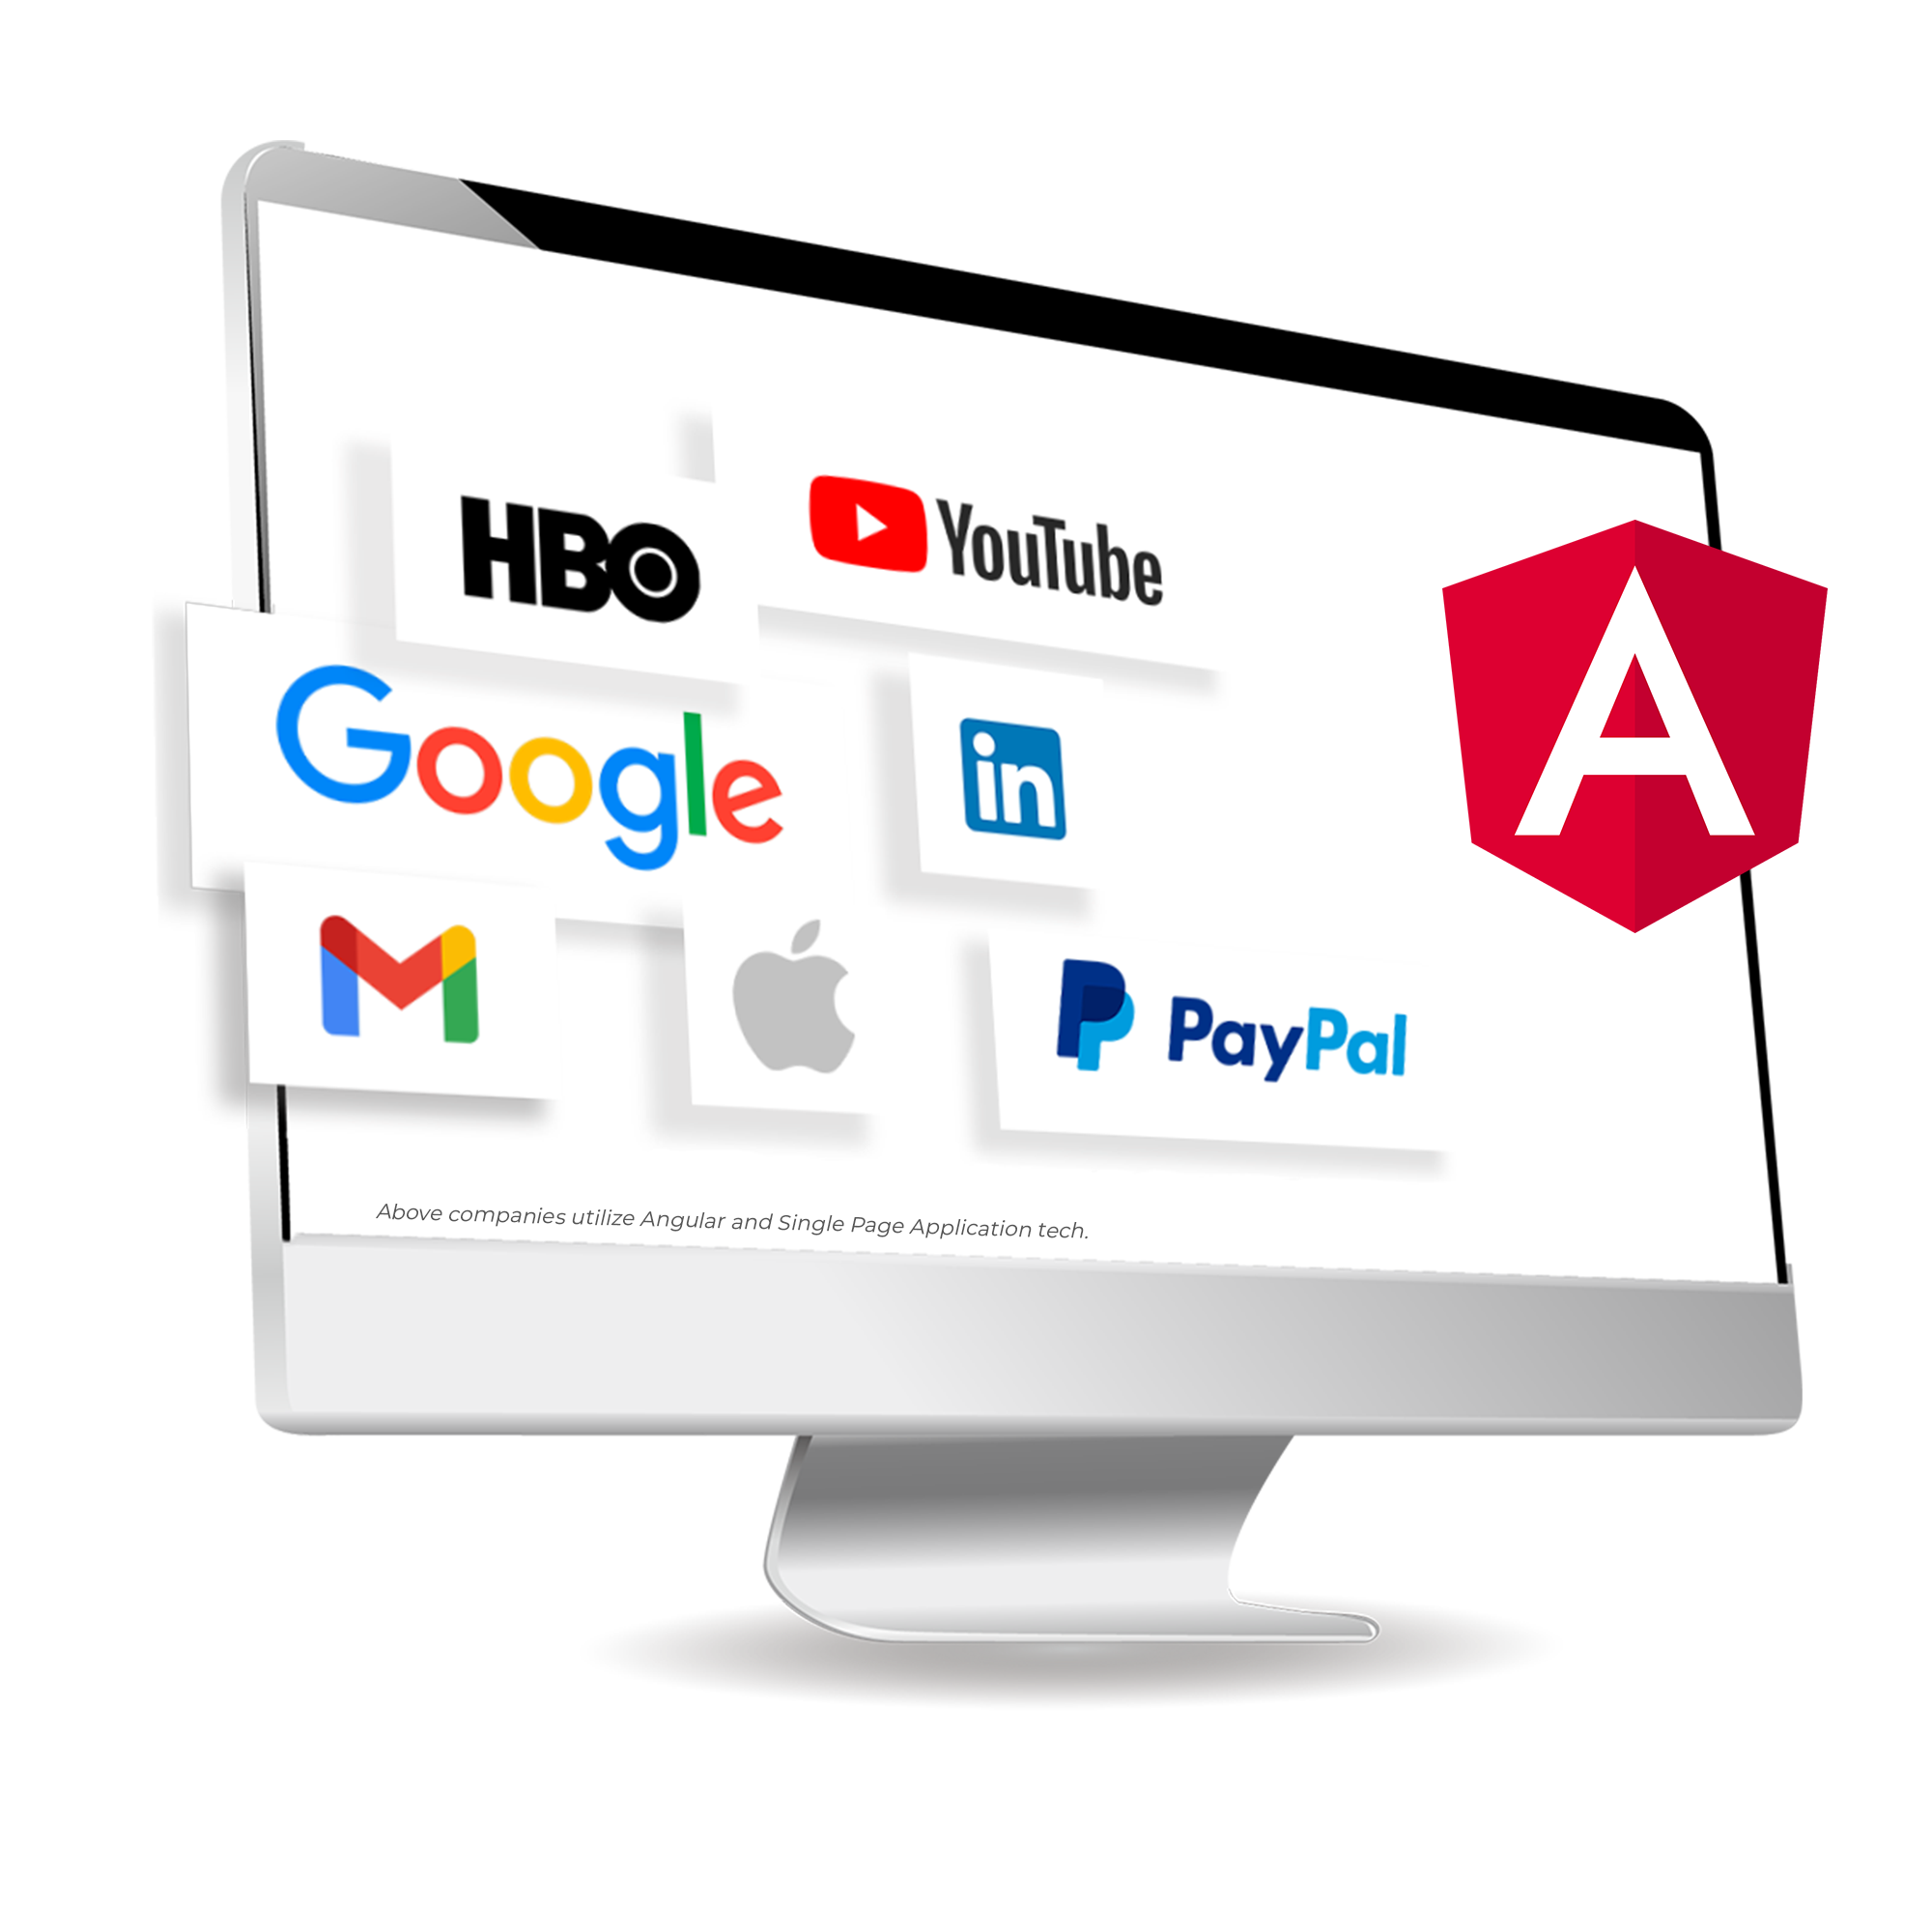 iMac with big Angular logo and Companies utilize Angular and SPA technologies